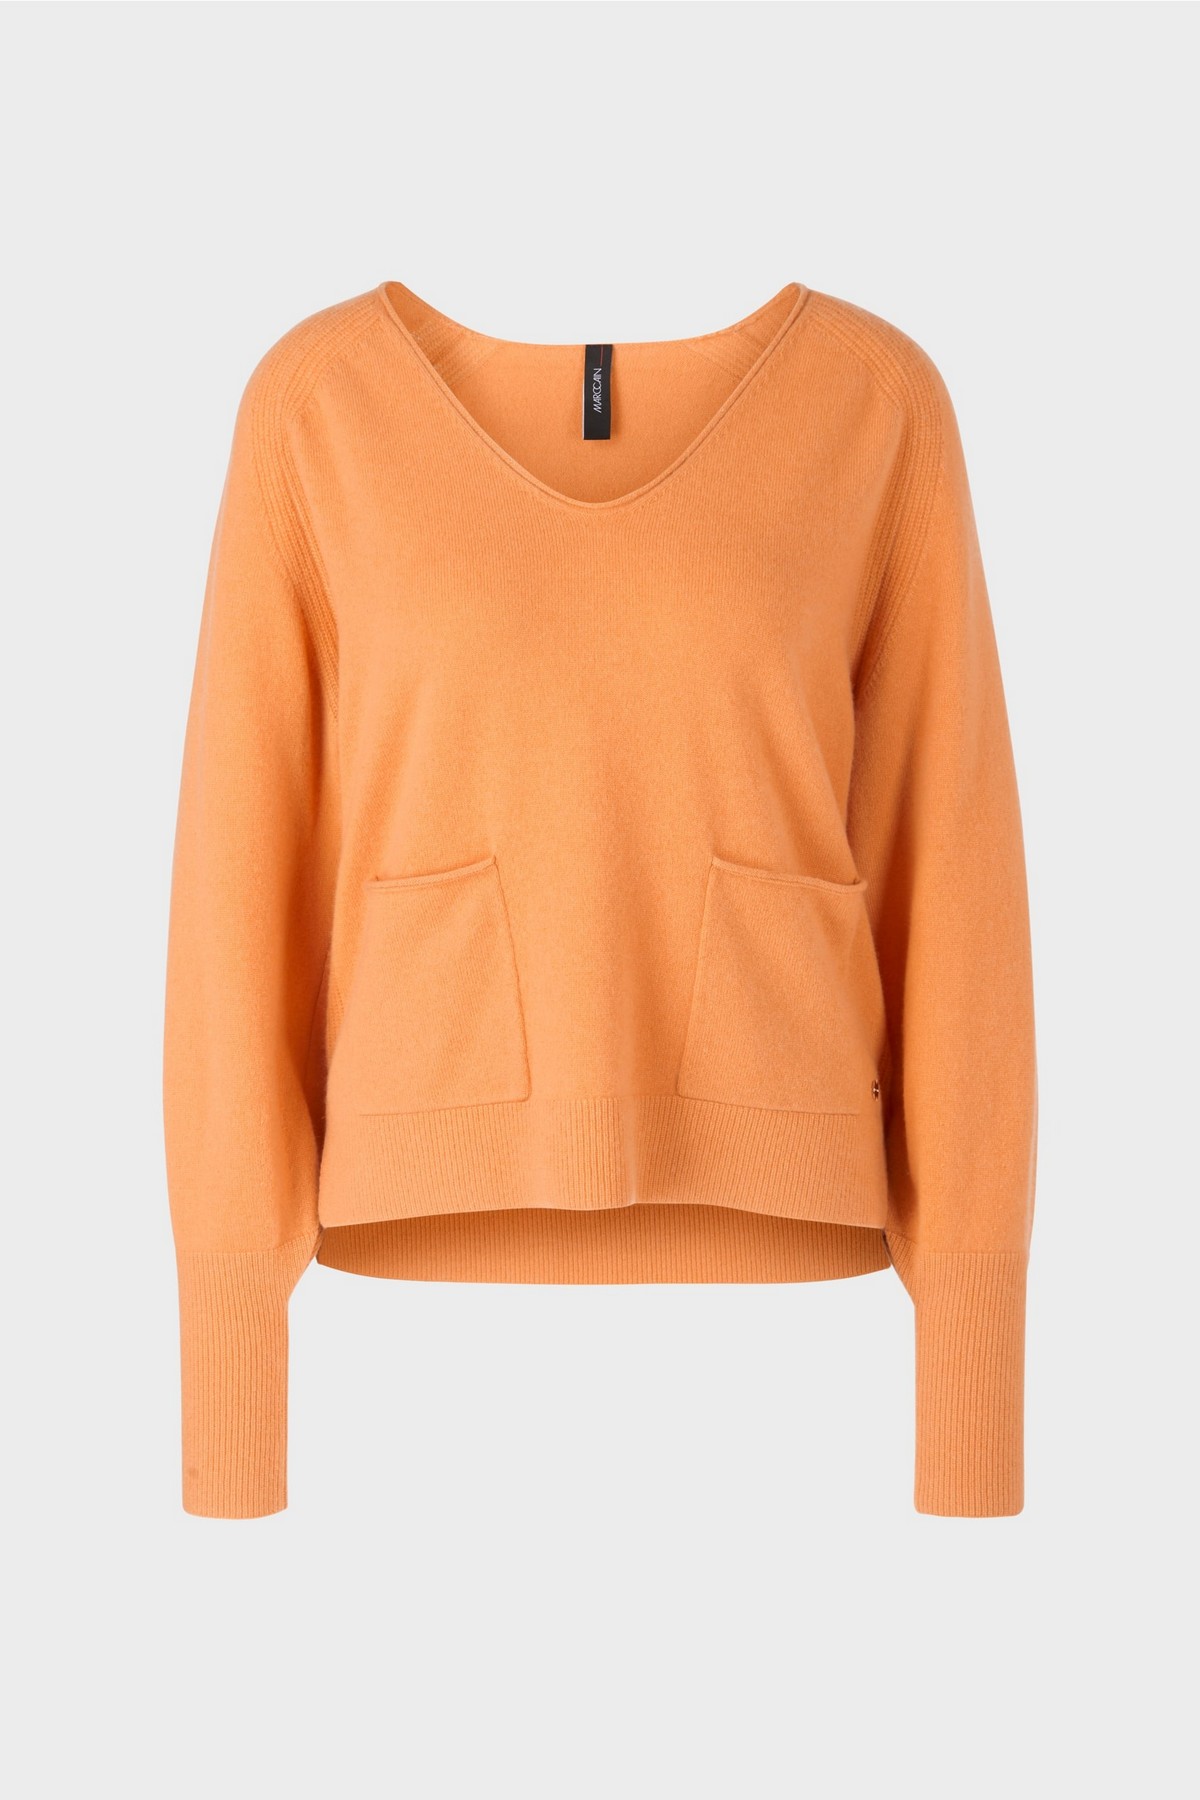 Pull V 100% cashmere in de kleur dark orange van het merk Marc Cain Collections